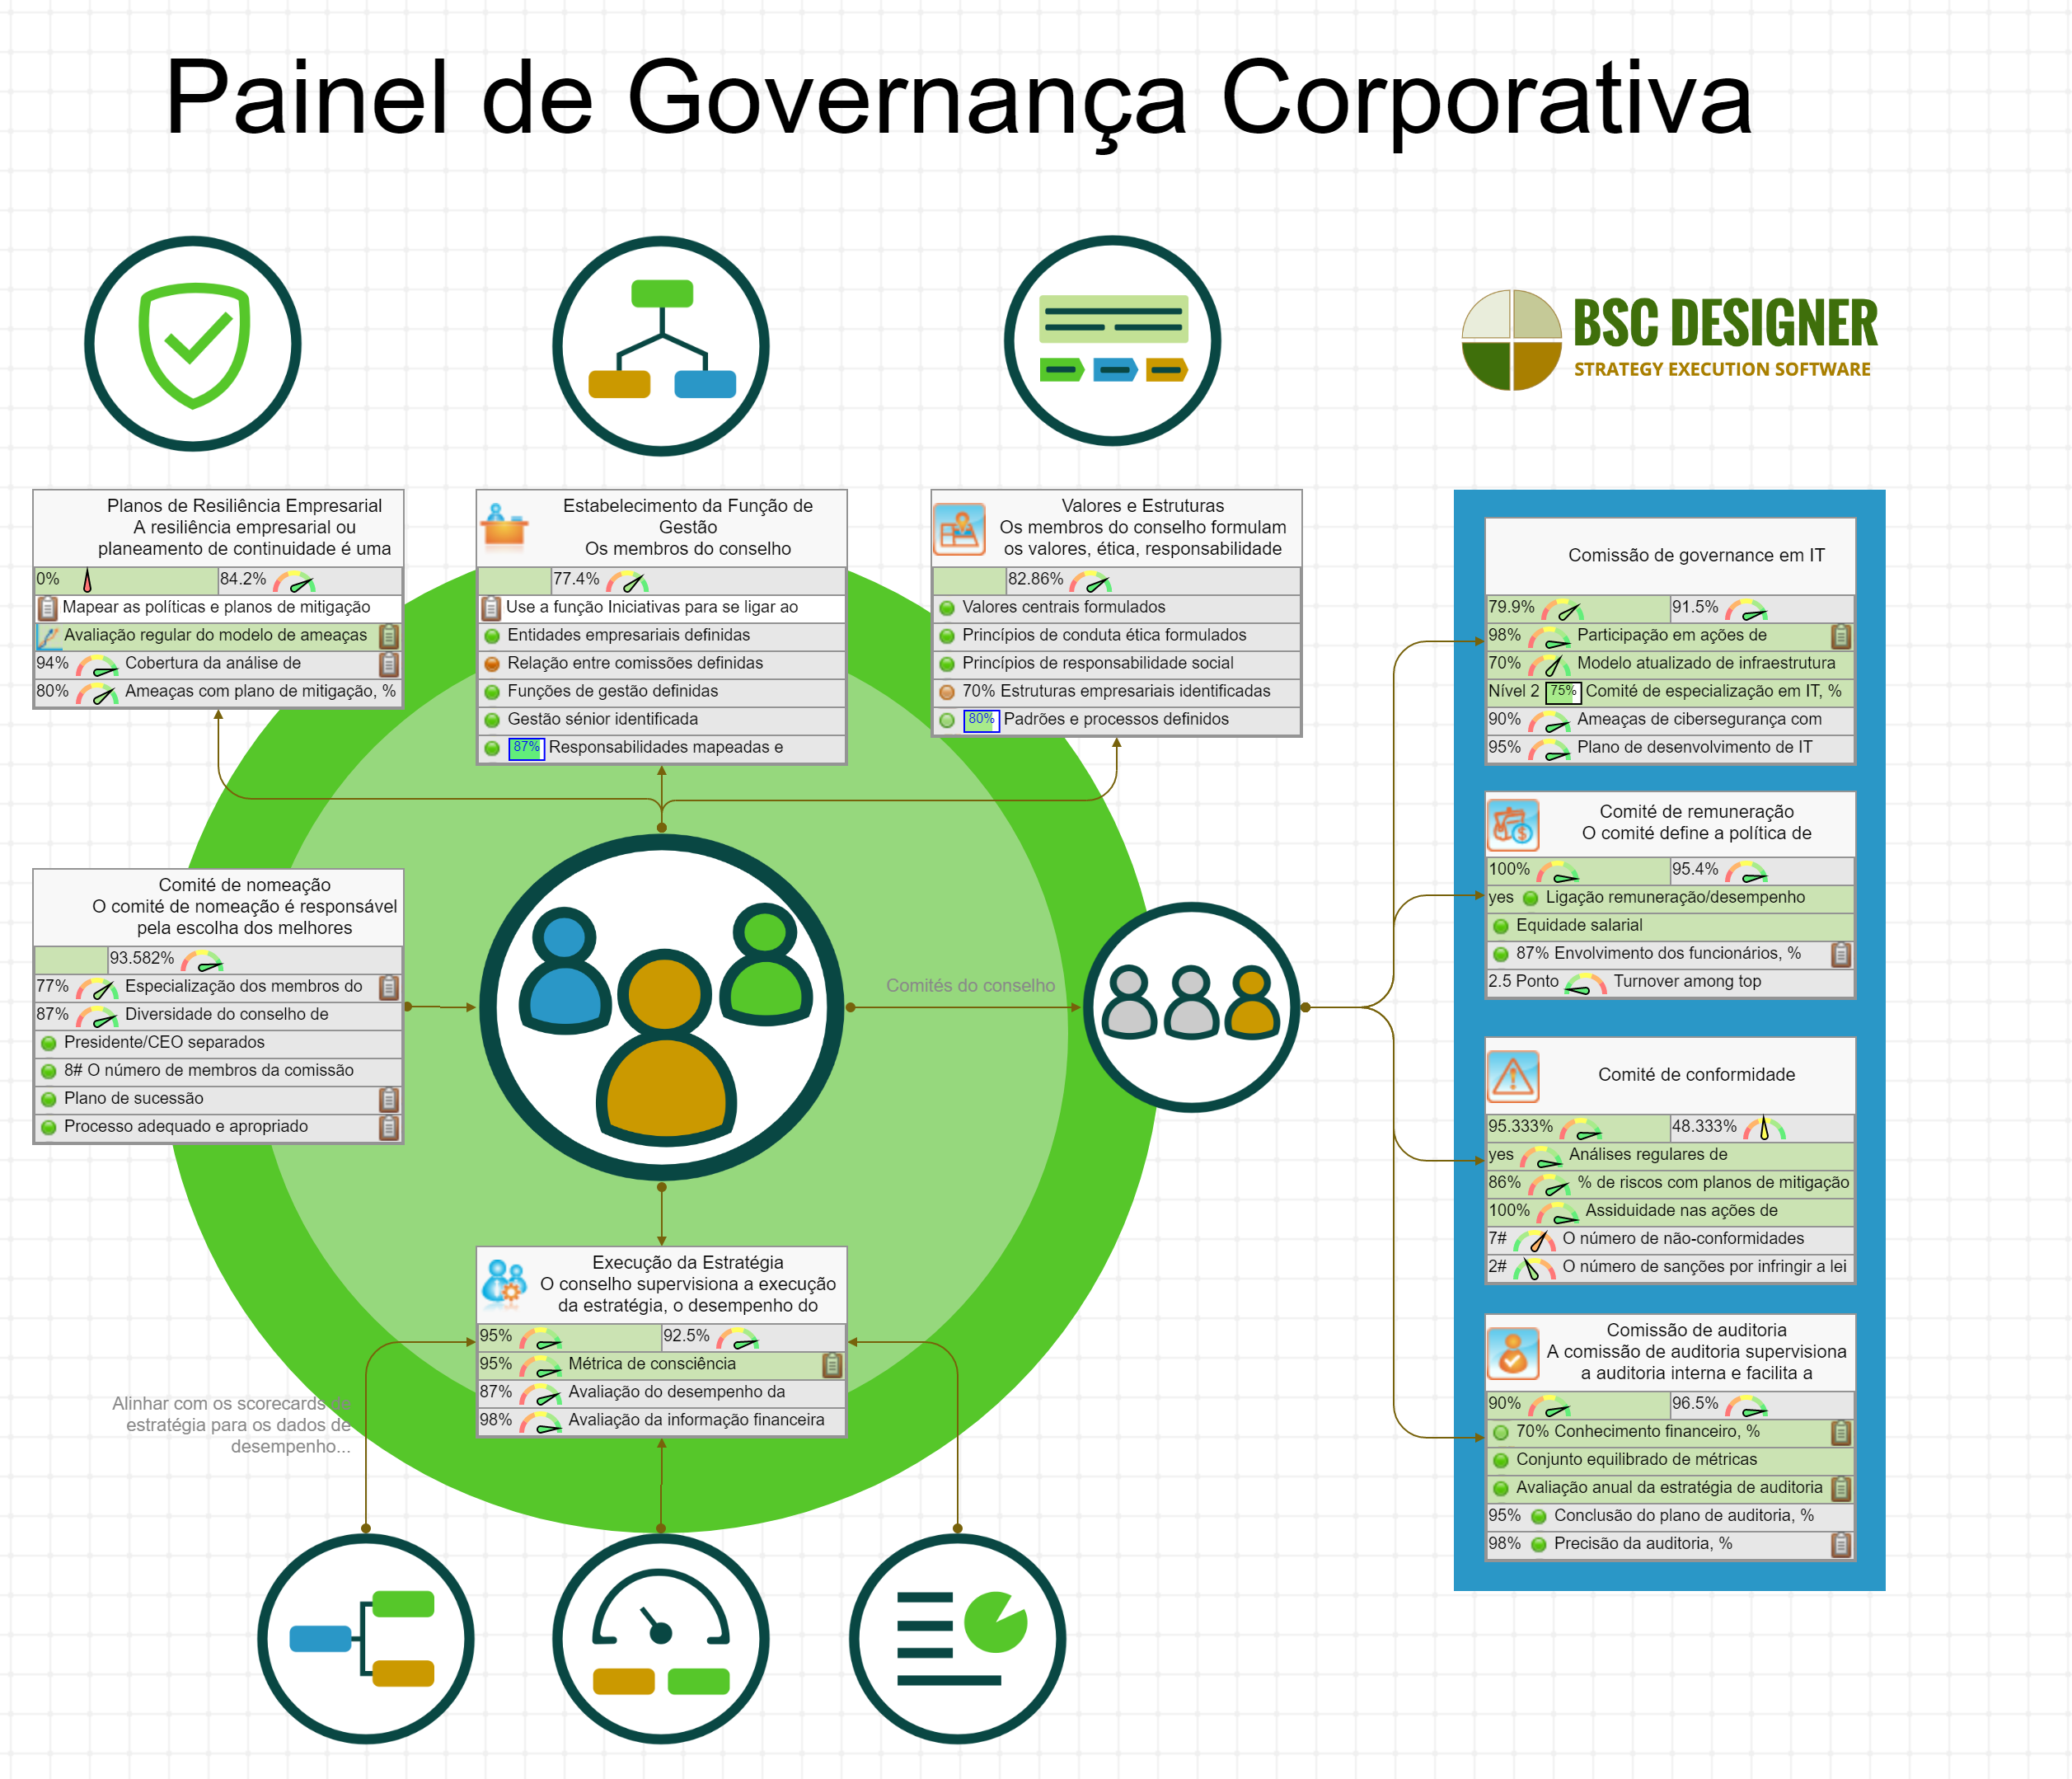 Dashboard de Governança Corporativa com KPIs